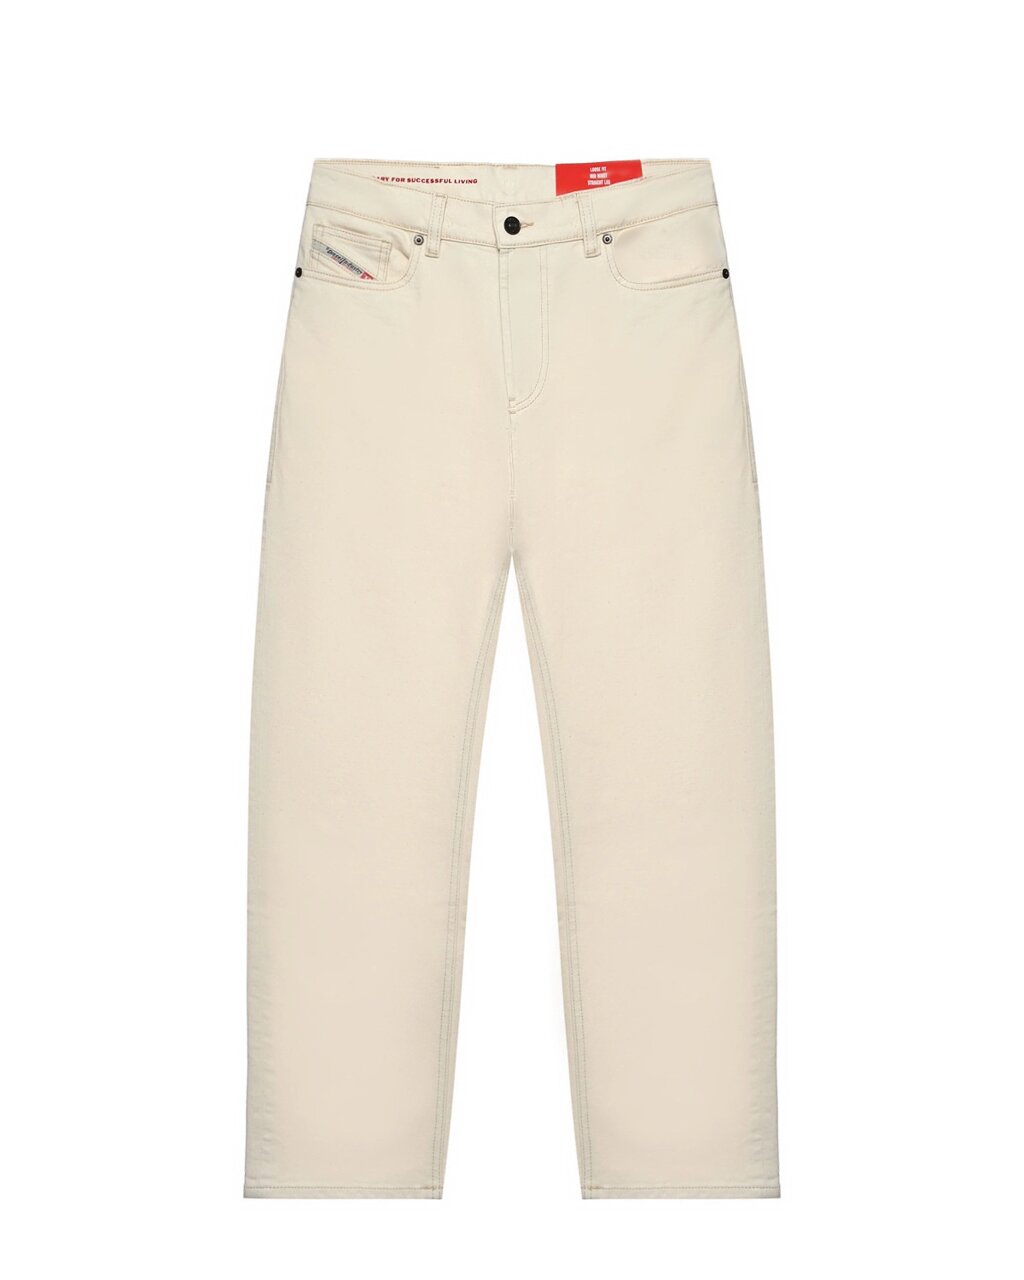 Зауженные белые джинсы Diesel от компании Admi - фото 1